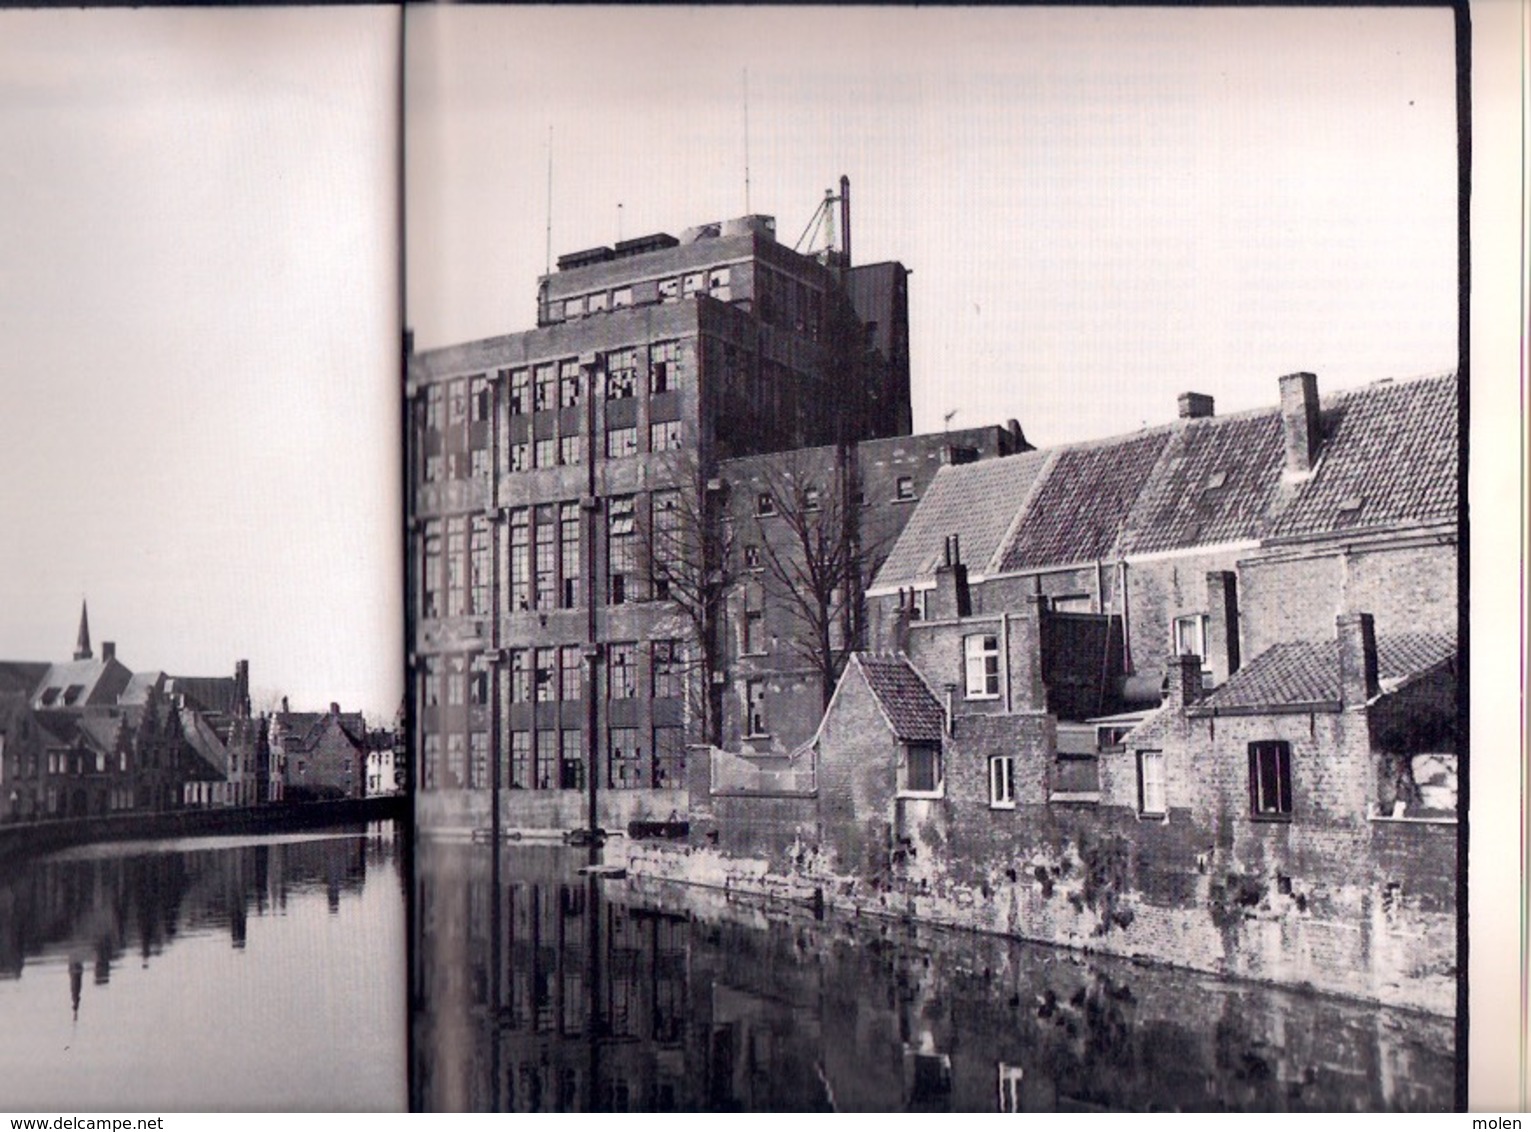 ELEGIE OM EEN GISTFABRIEK In BRUGGE ©1985 32pp & 22 Foto’s Bruno Couwenberg Heemkunde Geschiedenis ANTIQUARIAAT Z742 - Brugge